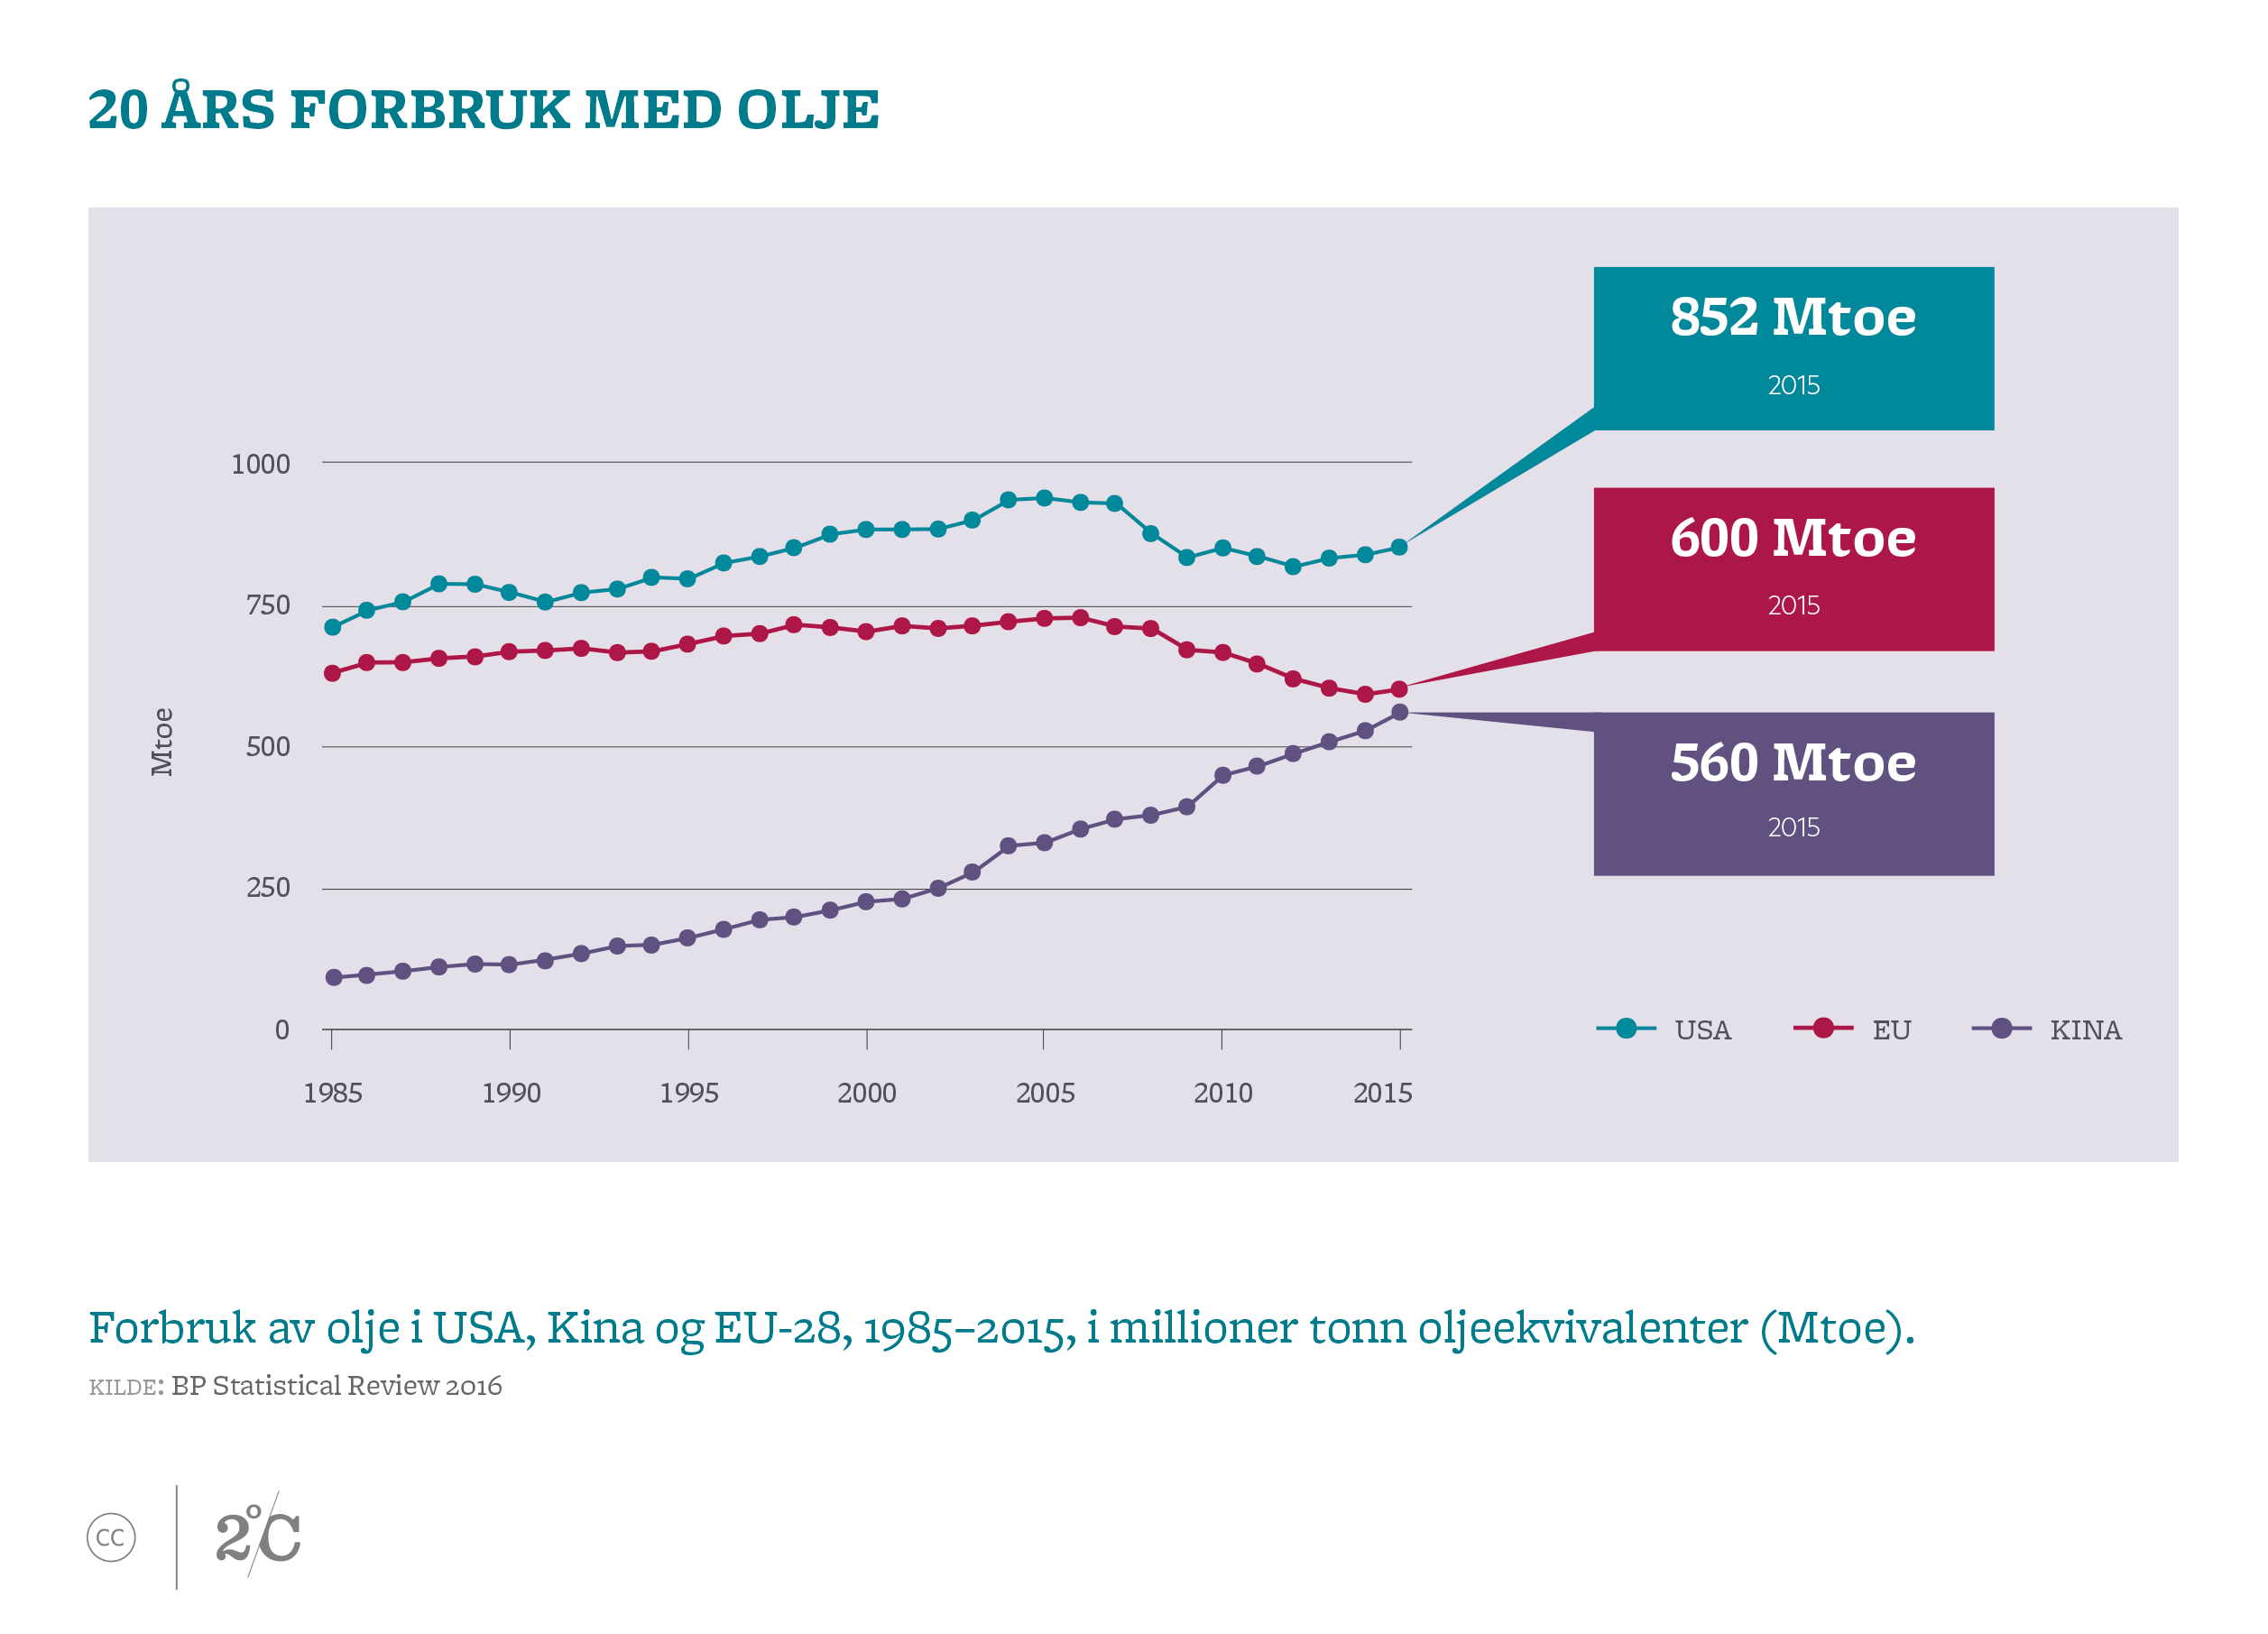 20 års forbruk med olje. Illustrasjon: Norsk Klimastiftelse